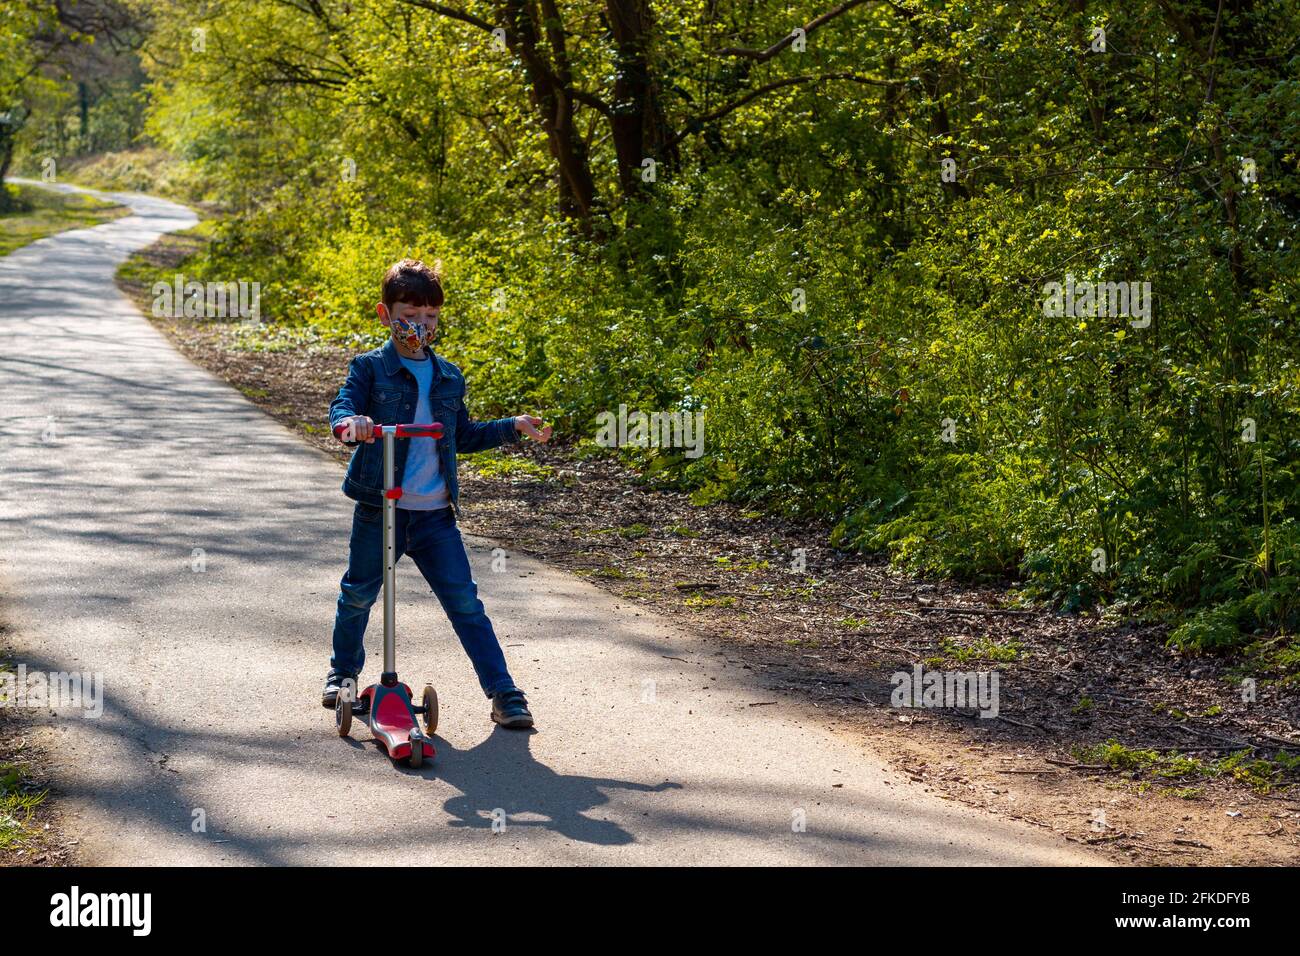 Toma completa de un niño con jeans, una chaqueta vaquera y una máscara facial jugando con una scooter en un parque en un día soleado Foto de stock